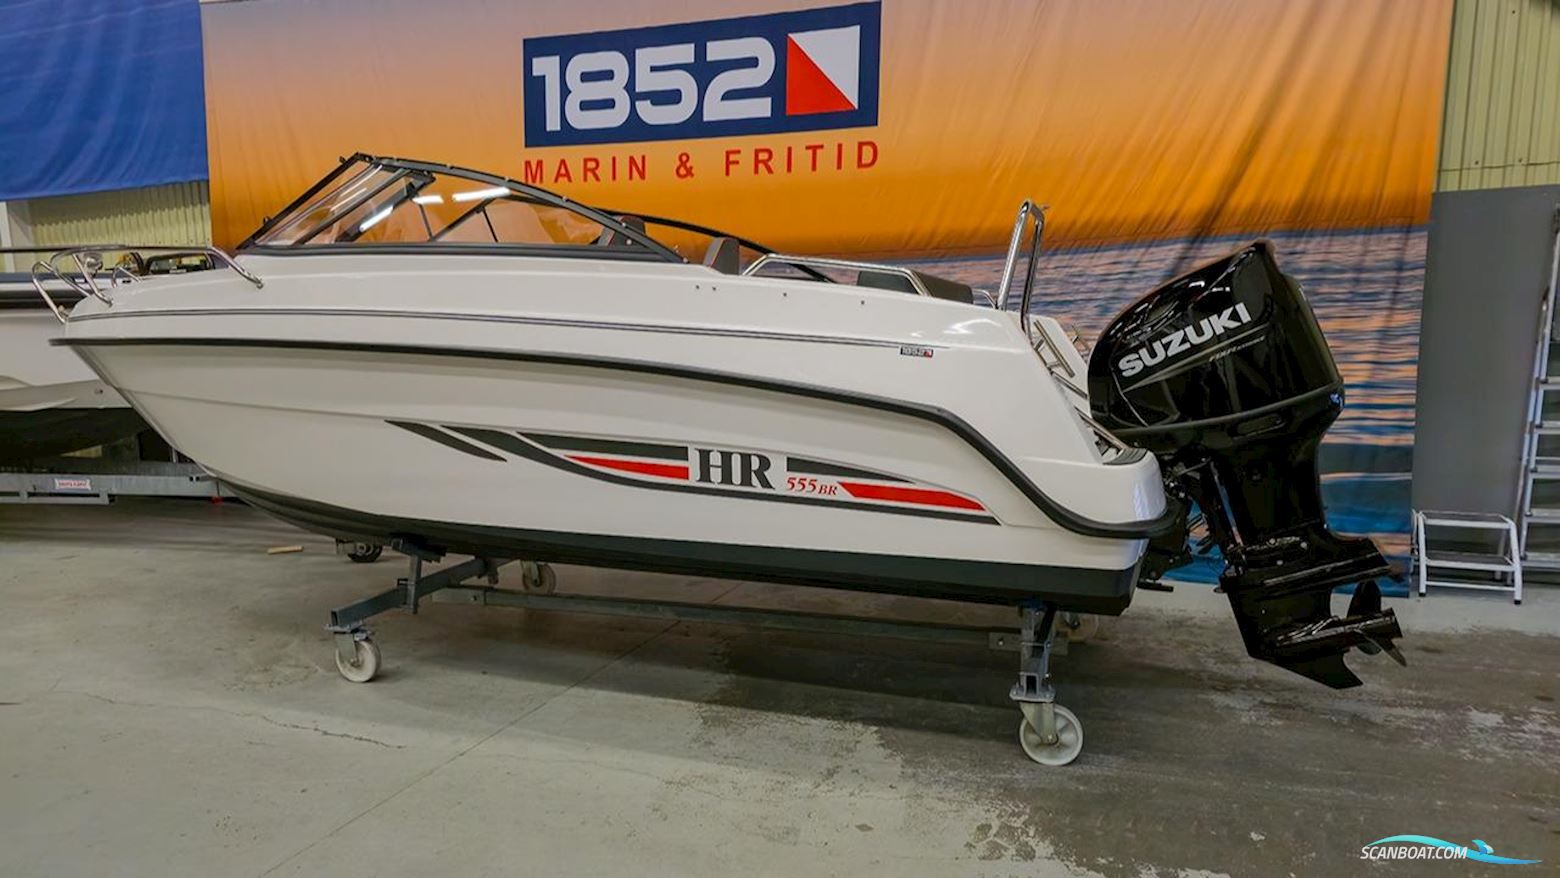 Hr 555 BR Motorbåt 2022, med Suzuki motor, Sverige